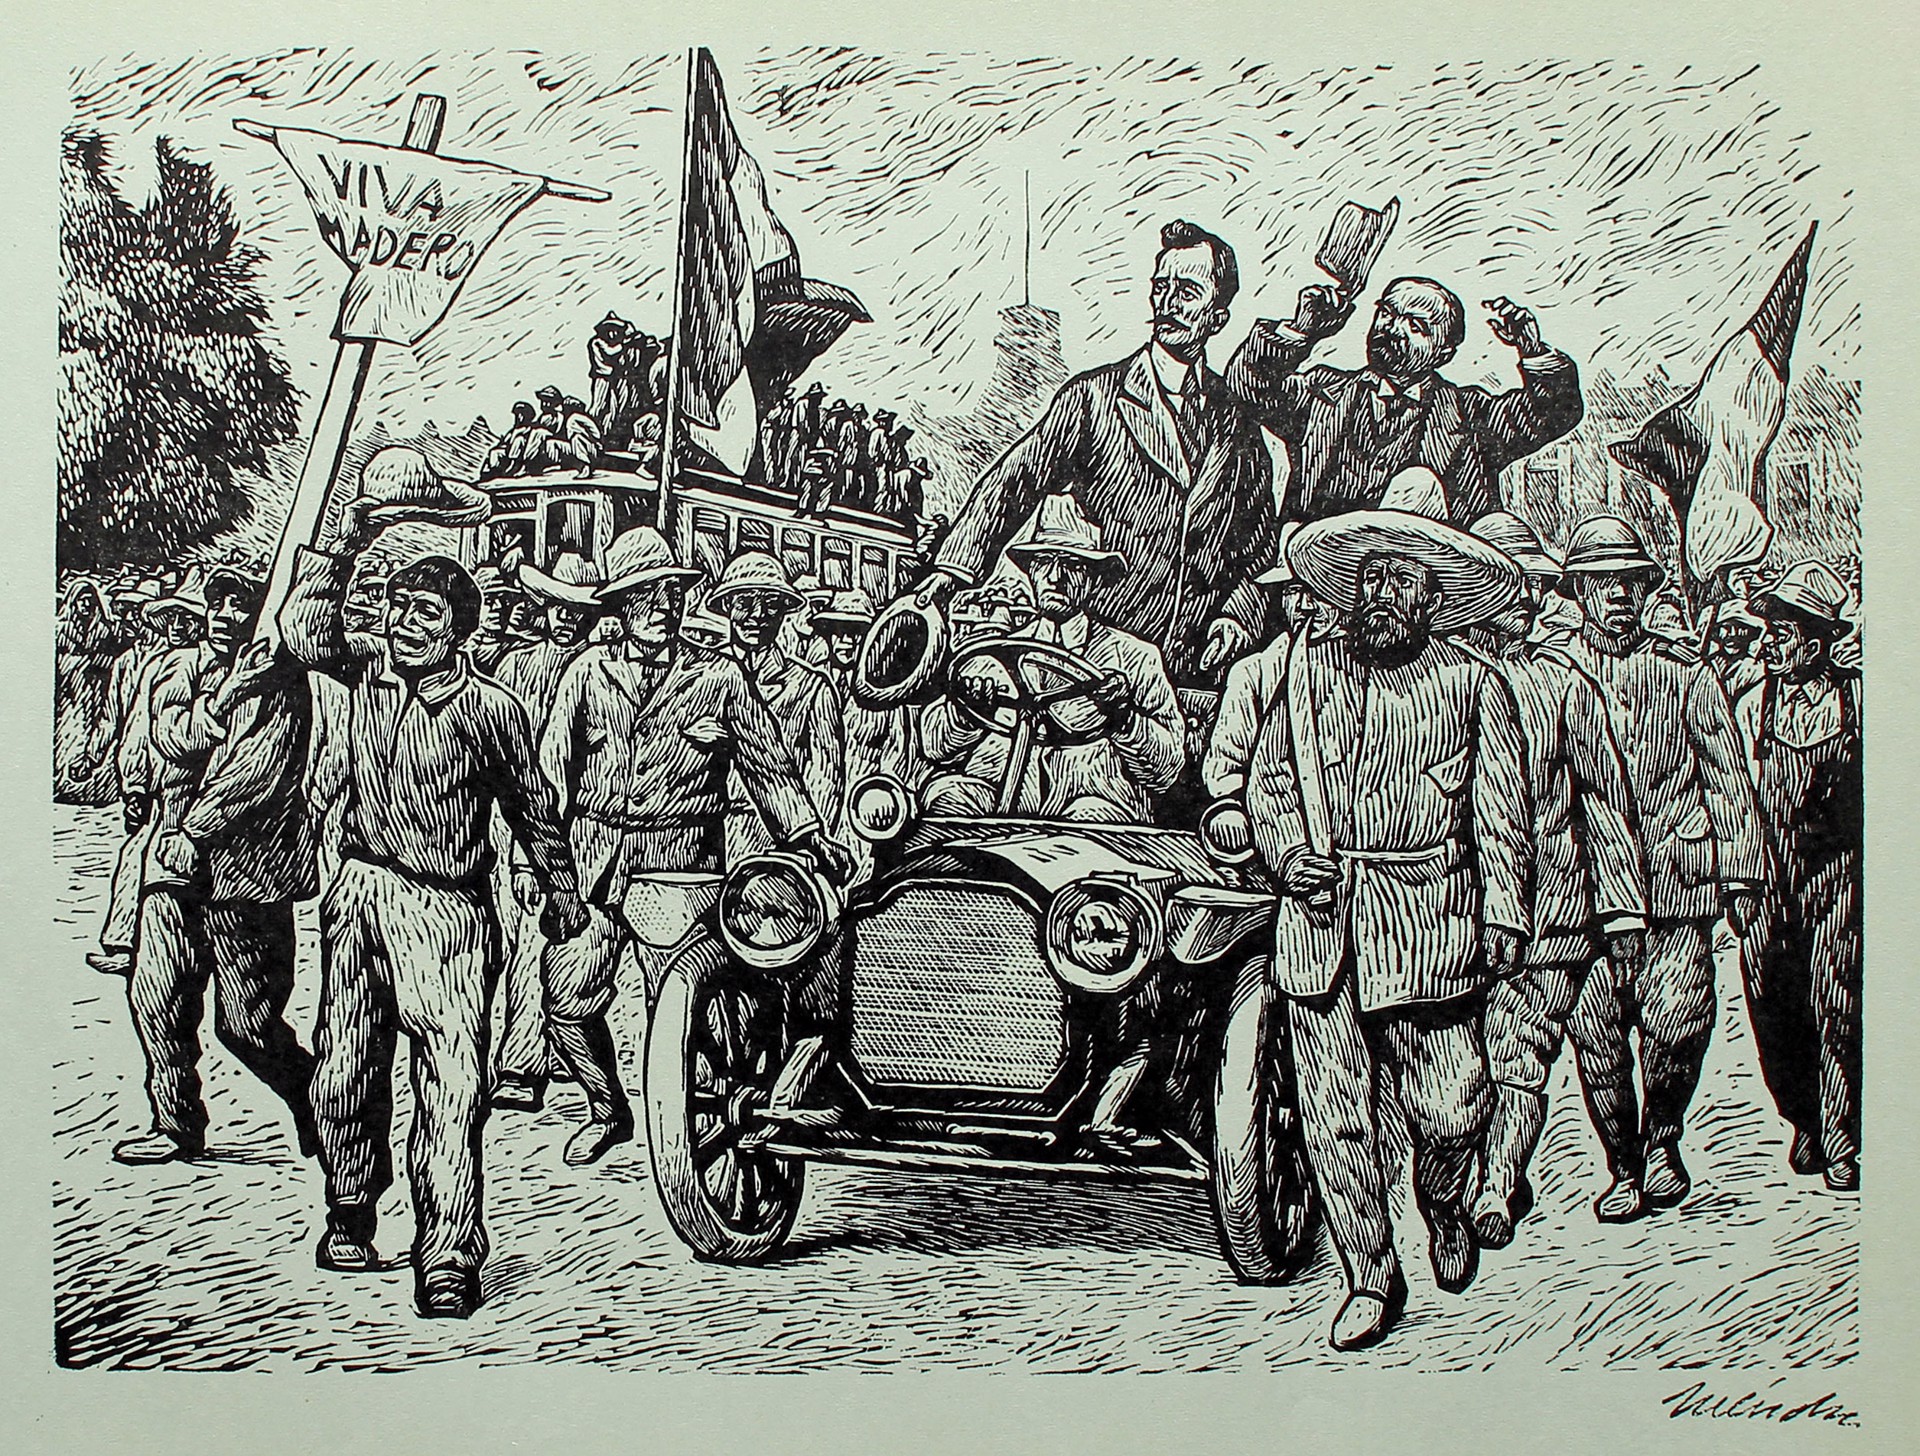 La Entrada de Francisco I. Madero en la Ciudad de México. 7 de Junio de 1911. by Leopoldo Méndez